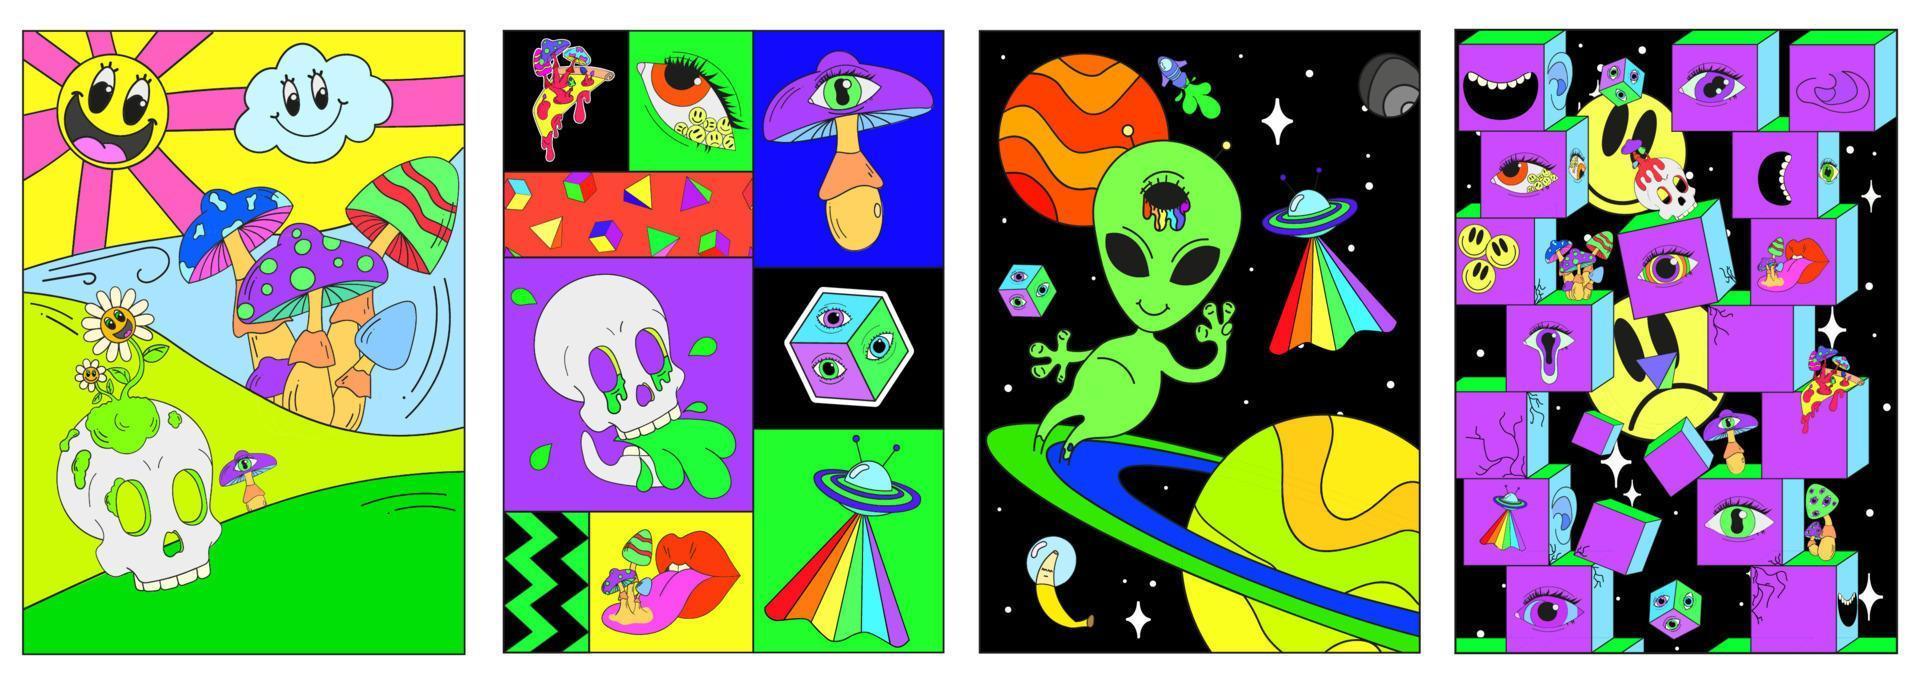 een set psychedelische posters met ruimte, gekke paddenstoelen, geometrie, schedels, ufo's en een alien. surrealisme vector